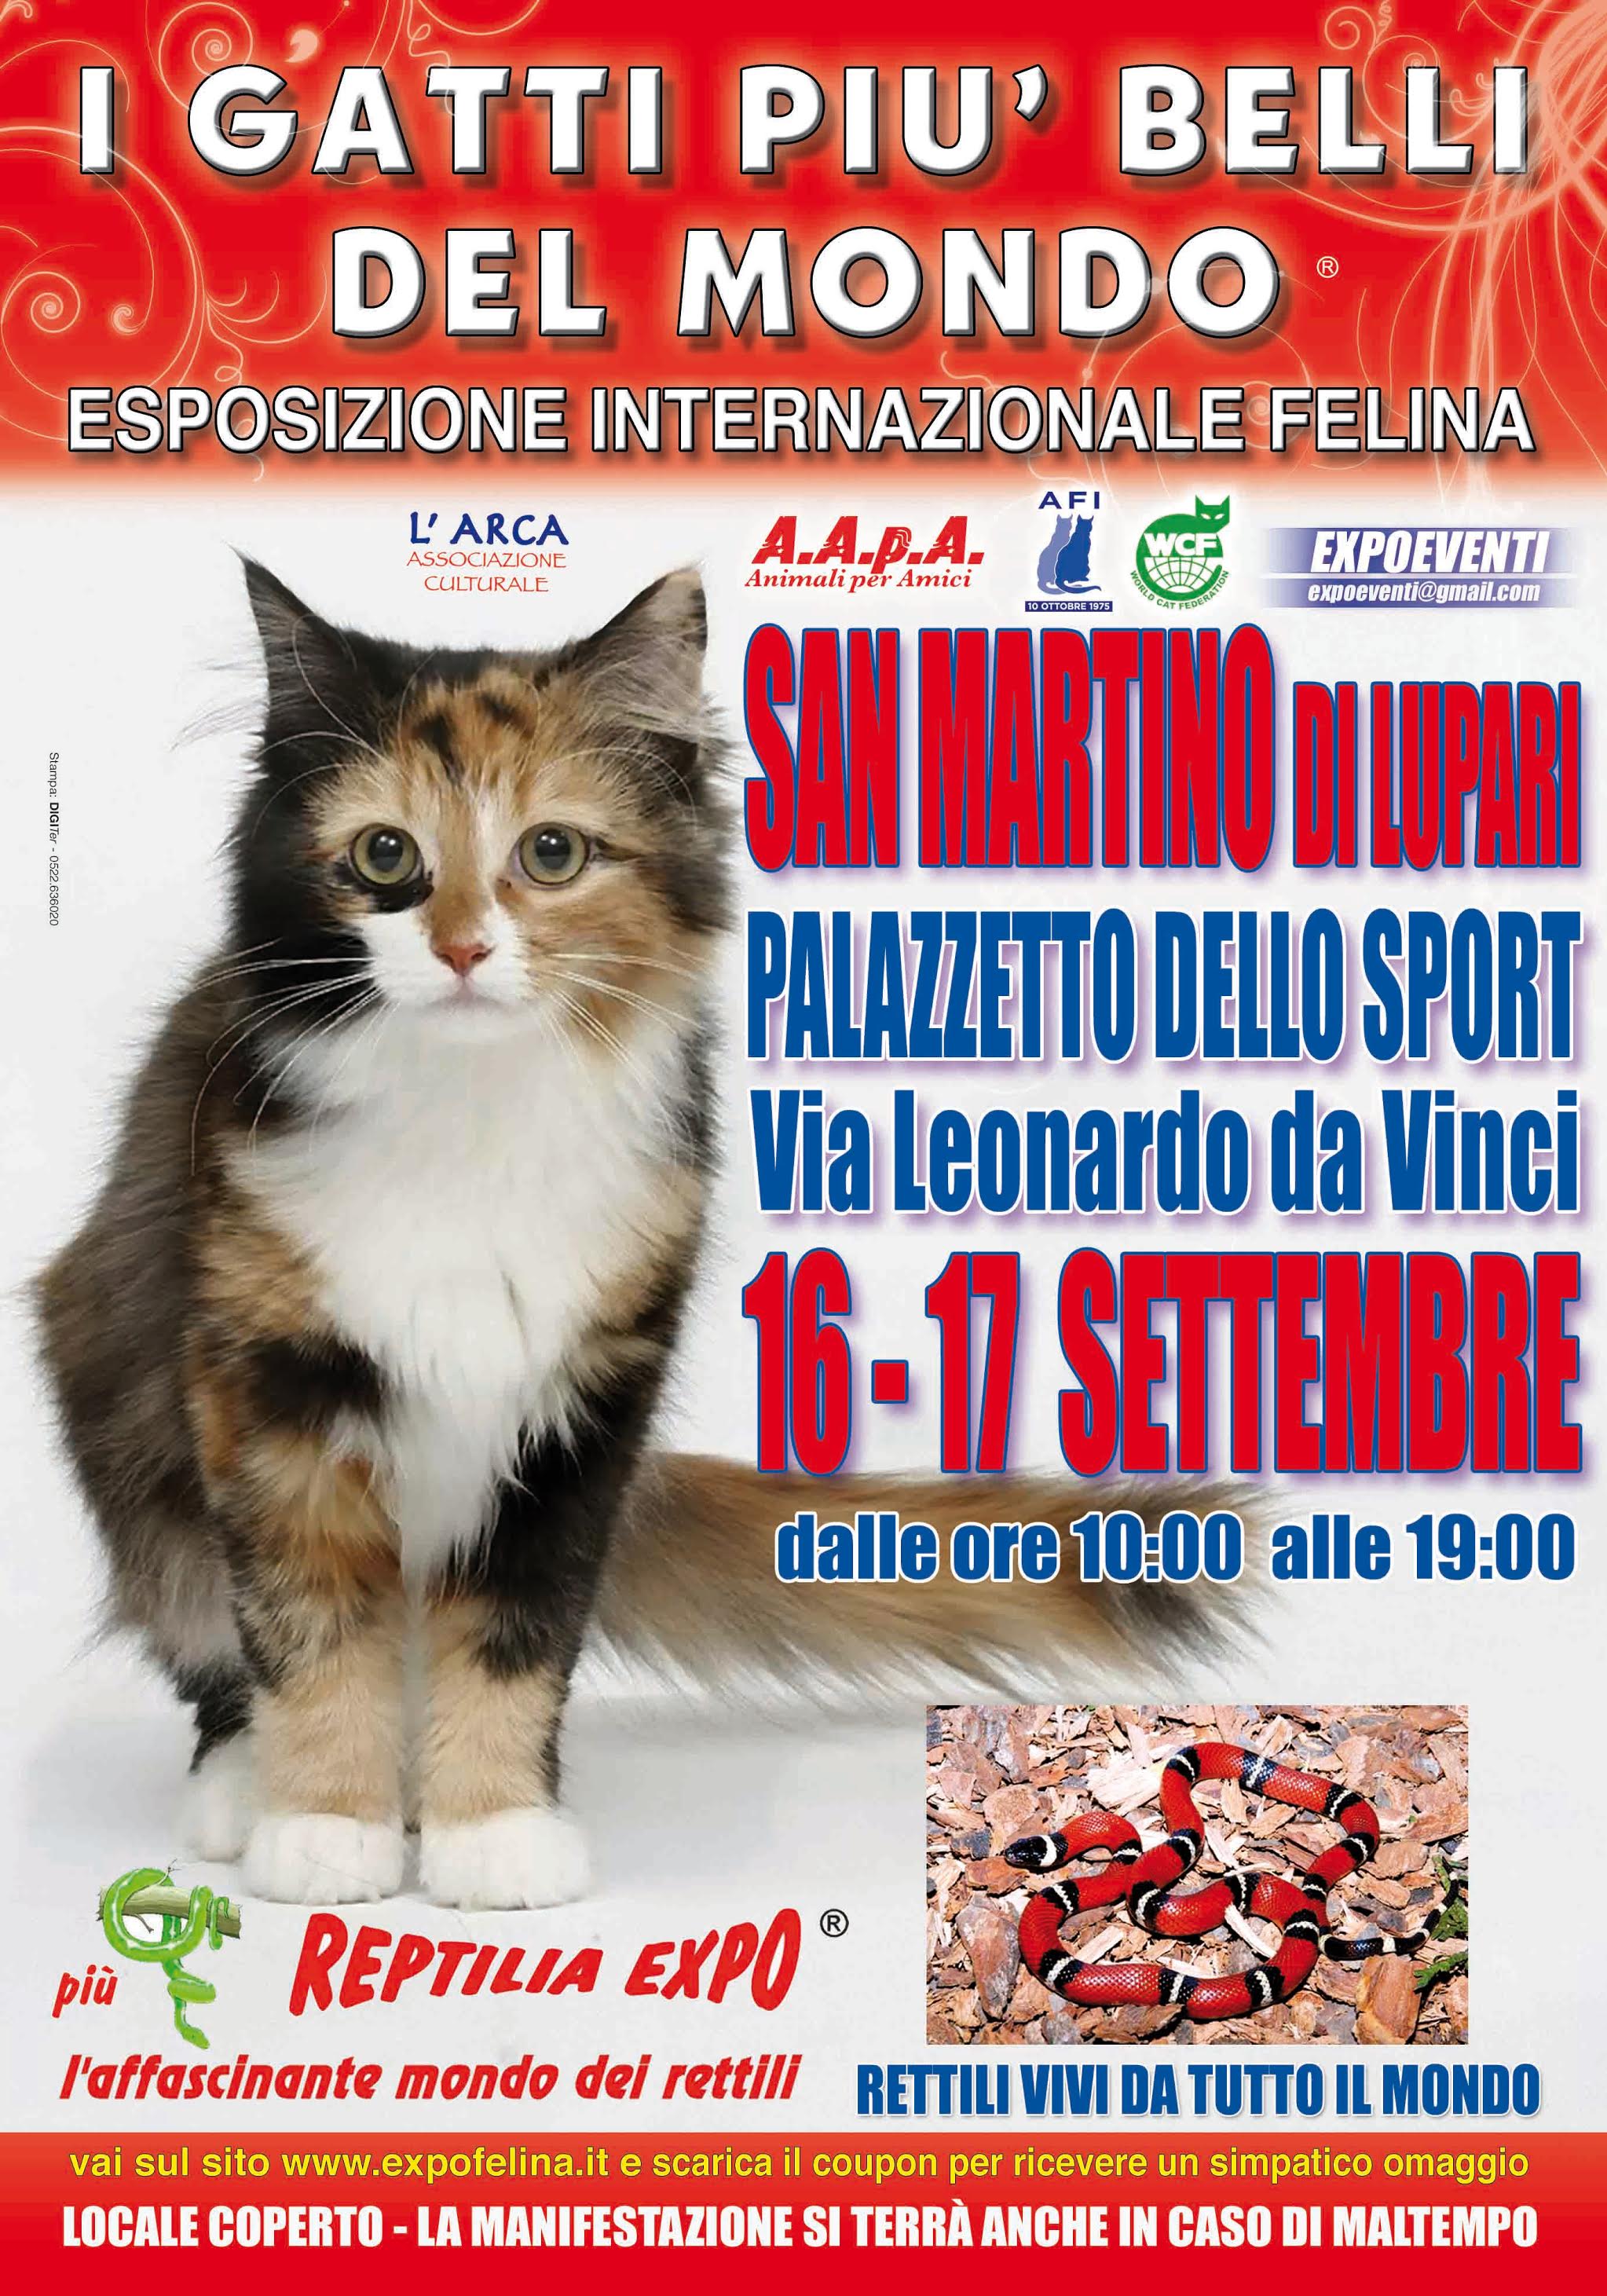 I Gatti Più Belli del Mondo e i Rettili più Affascinanti in mostra al Palazzetto dello Sport di SAN MARTINO DI LUPARI (Padova)